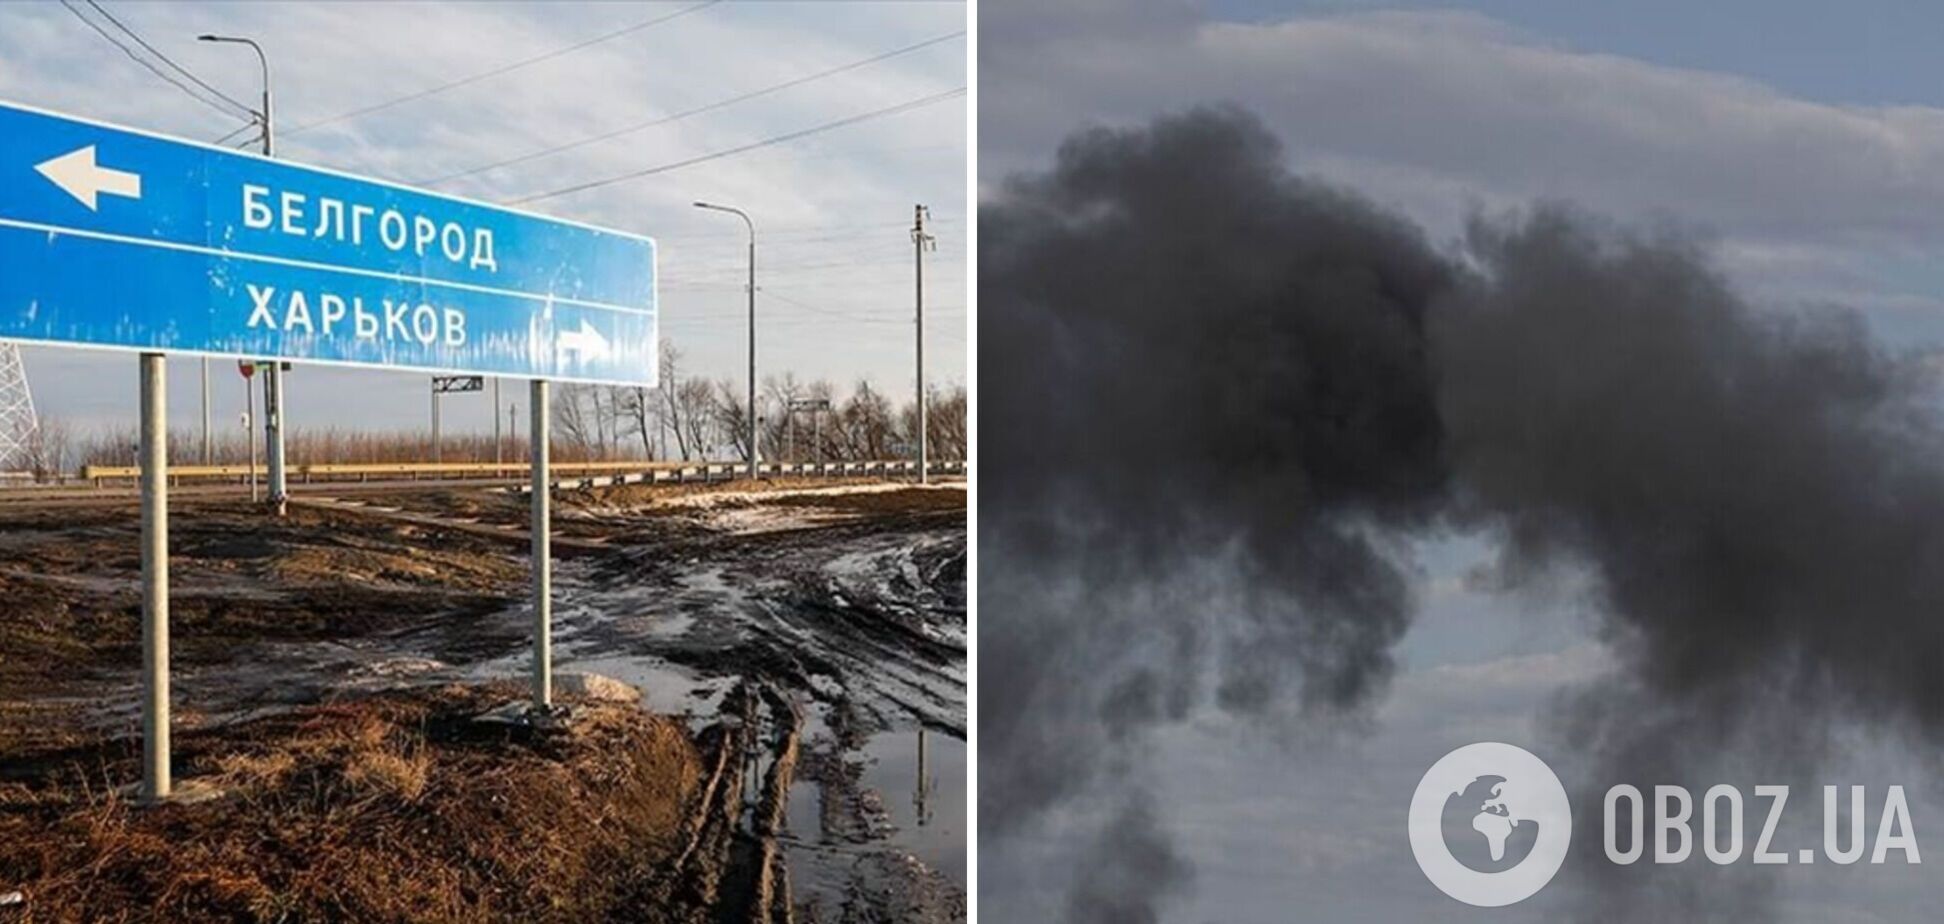 В сети сообщили о падении самолета в Белгородской области РФ (фото иллюстративное)